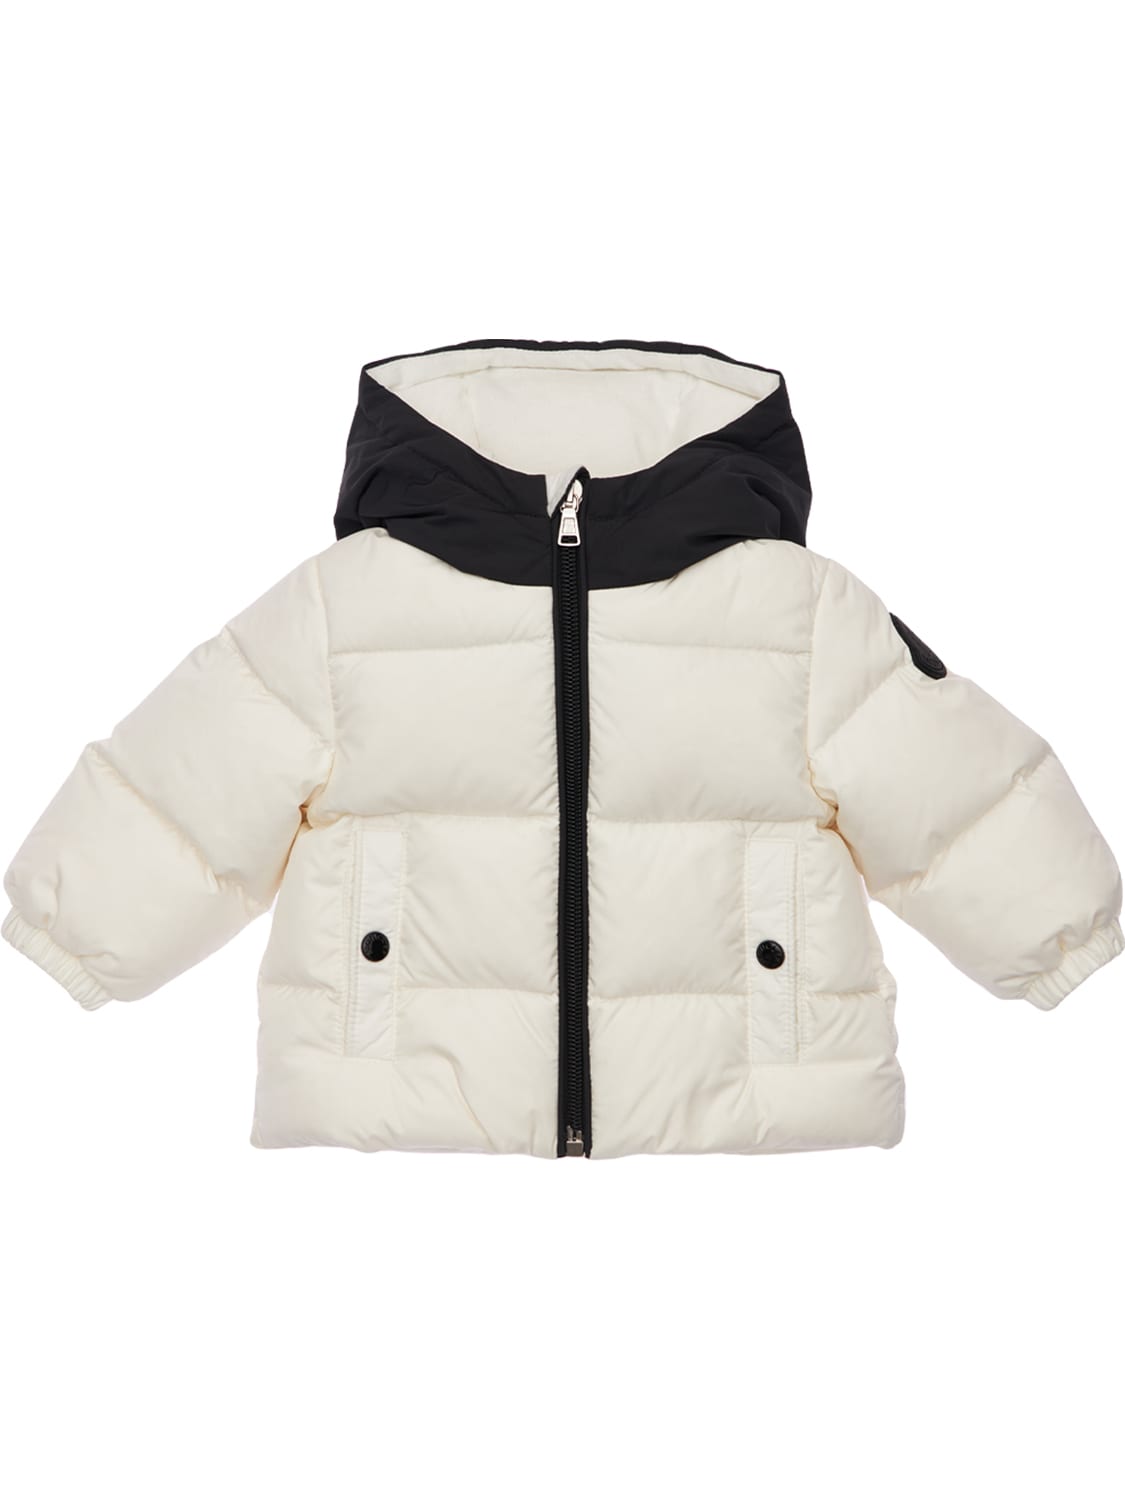 Moncler Kids' Araldo Hooded Nylon Down Jacket In White